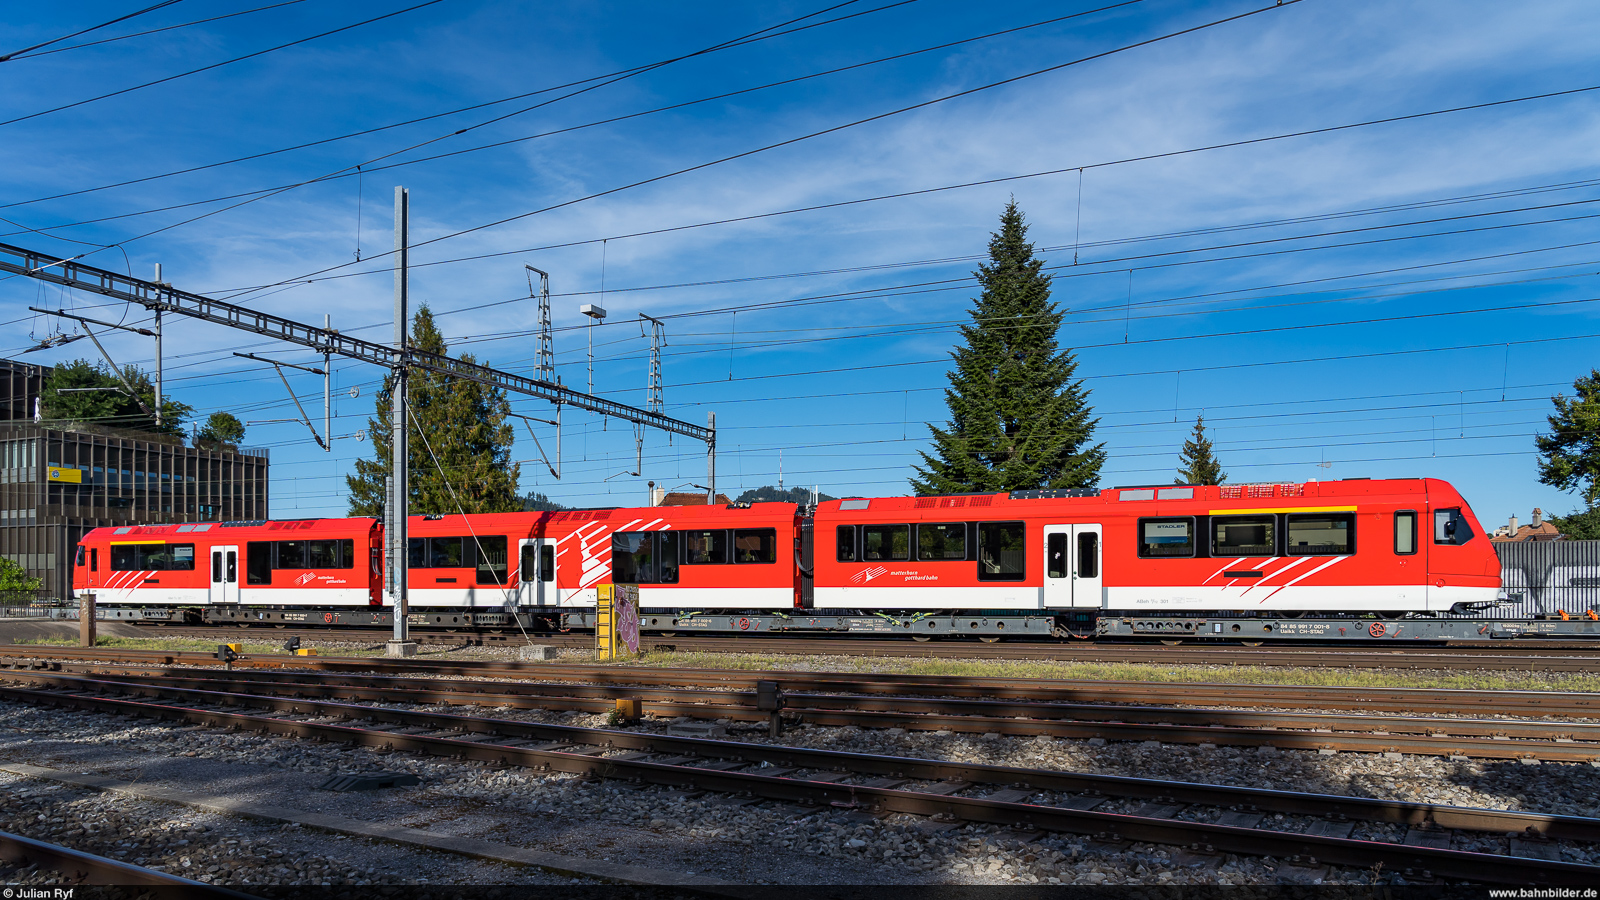 MGB ABeh 8/12 301 / Ostermundigen, 12. September 2022<br>
Auslieferung des ersten  Orion  für die Matterhorn-Gotthard-Bahn